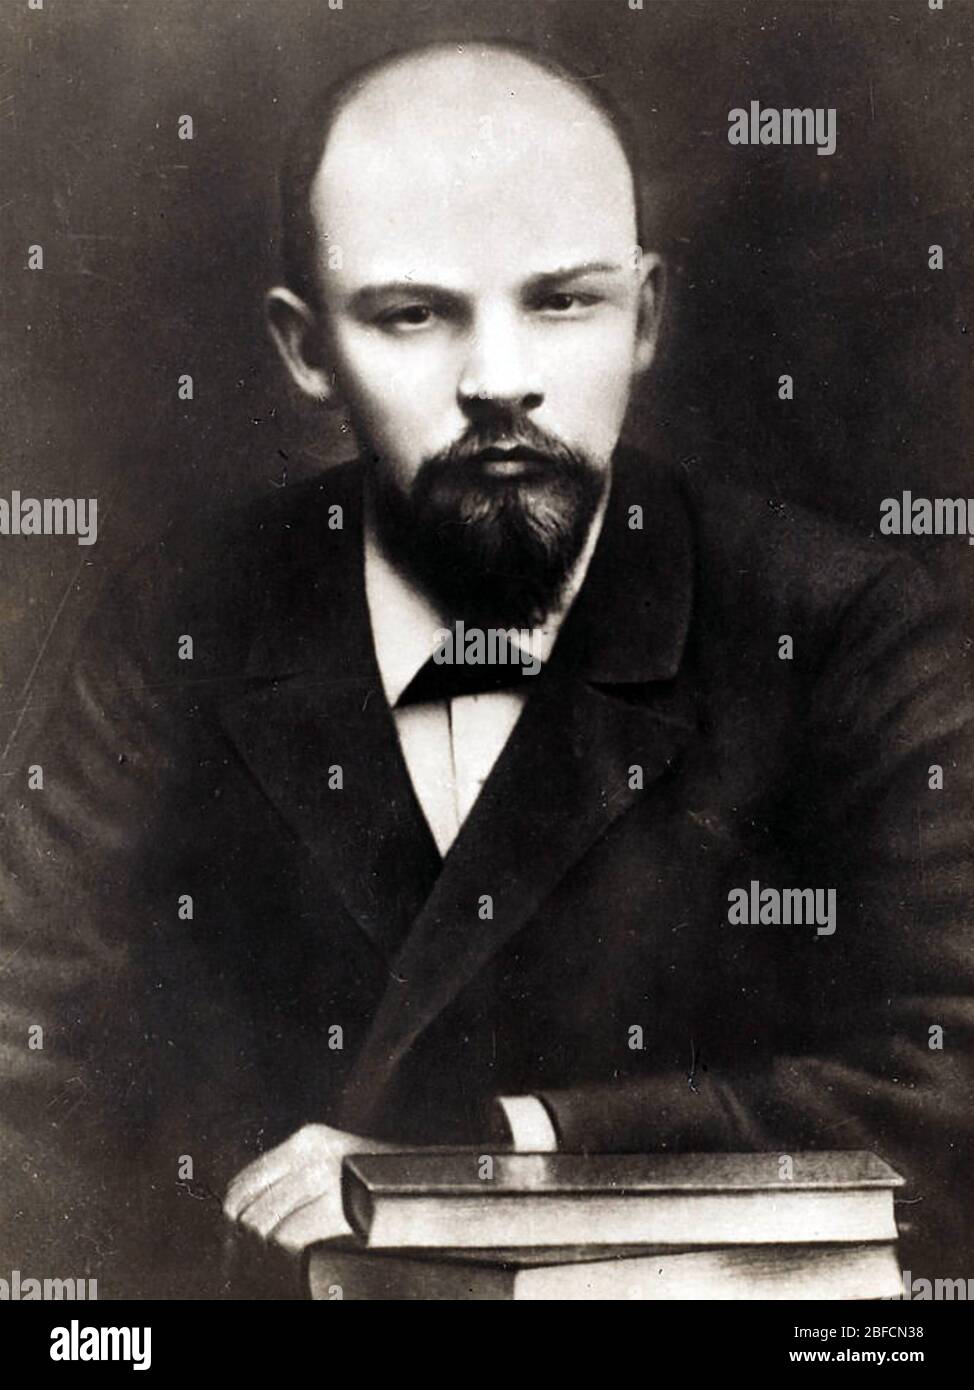 VLADIMIR LENIN (1870-1924) revolucionario ruso alrededor de 1897 Foto de stock